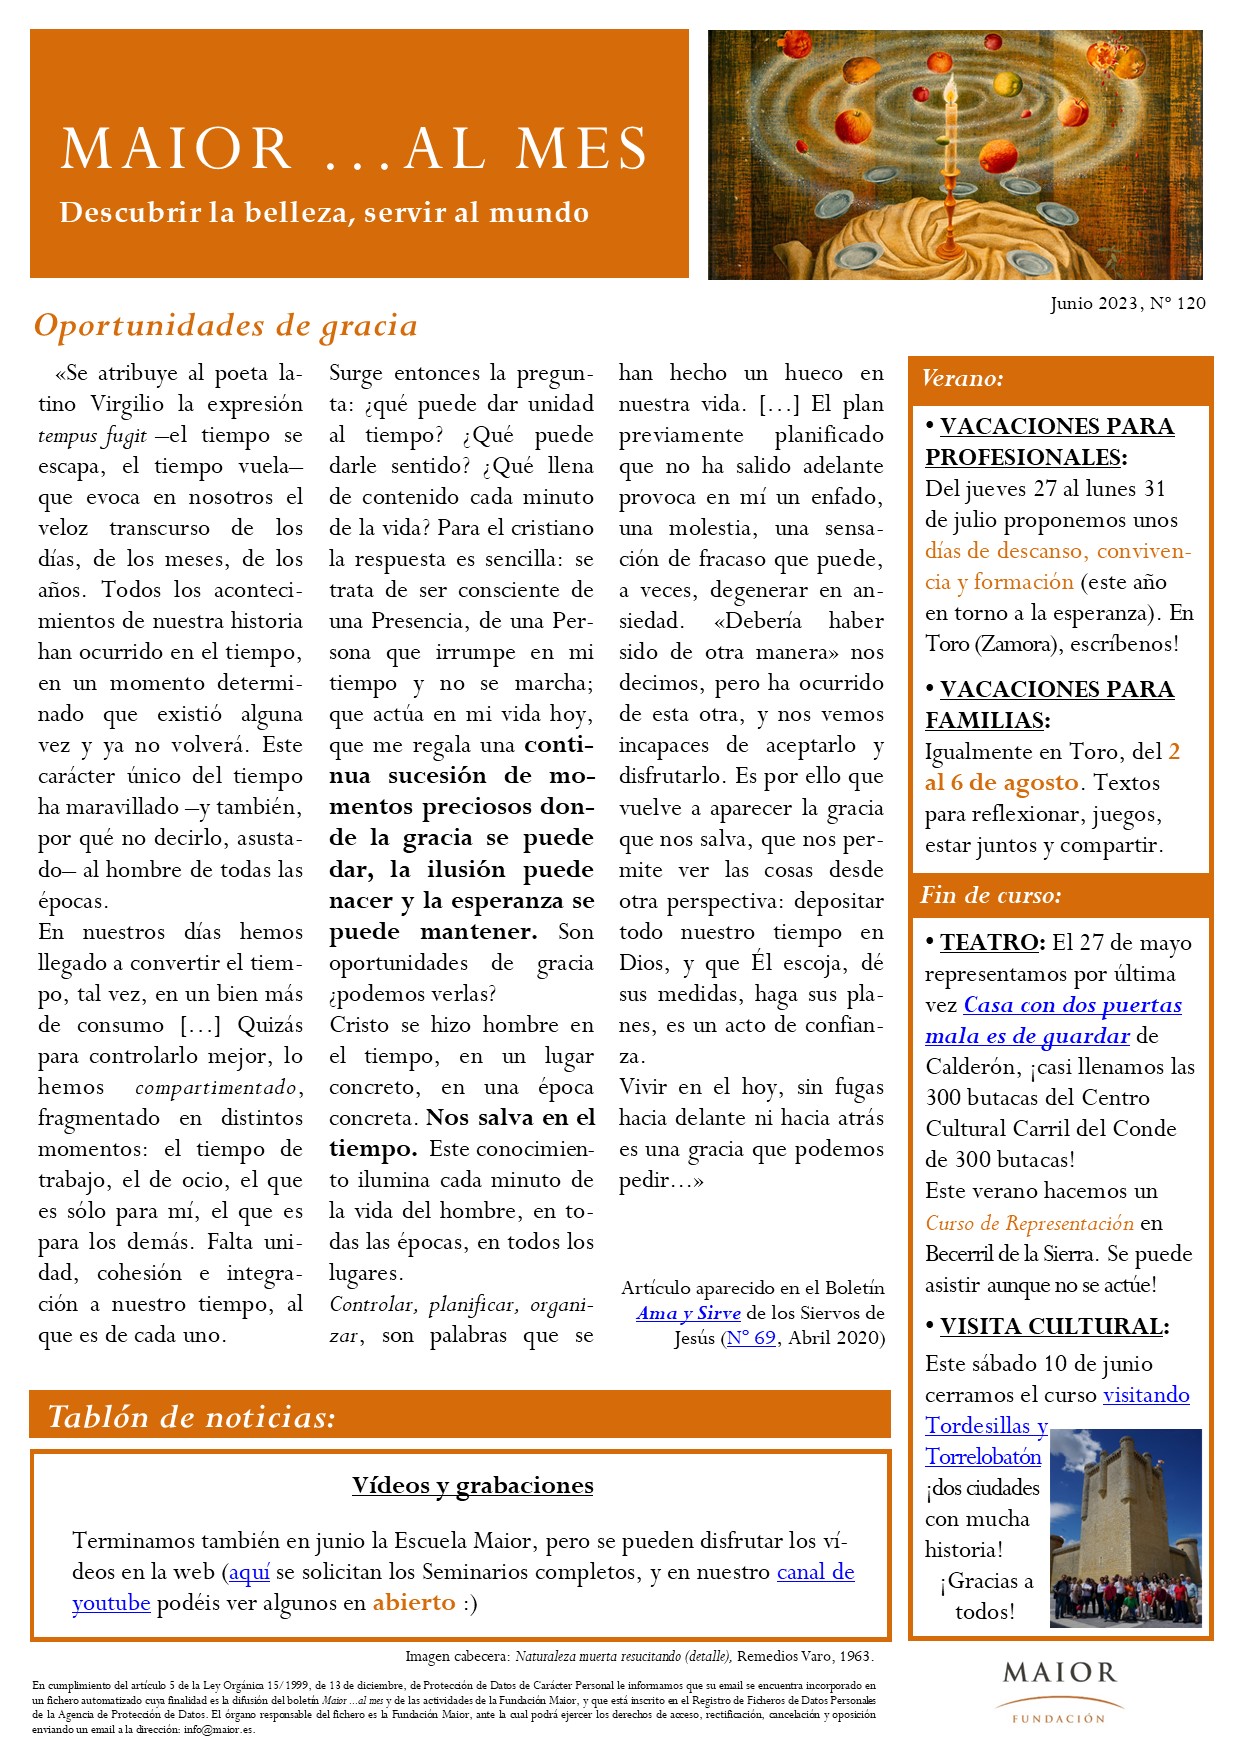 Boletín mensual de noticias y actividades de la Fundación Maior. Edición de junio 2023